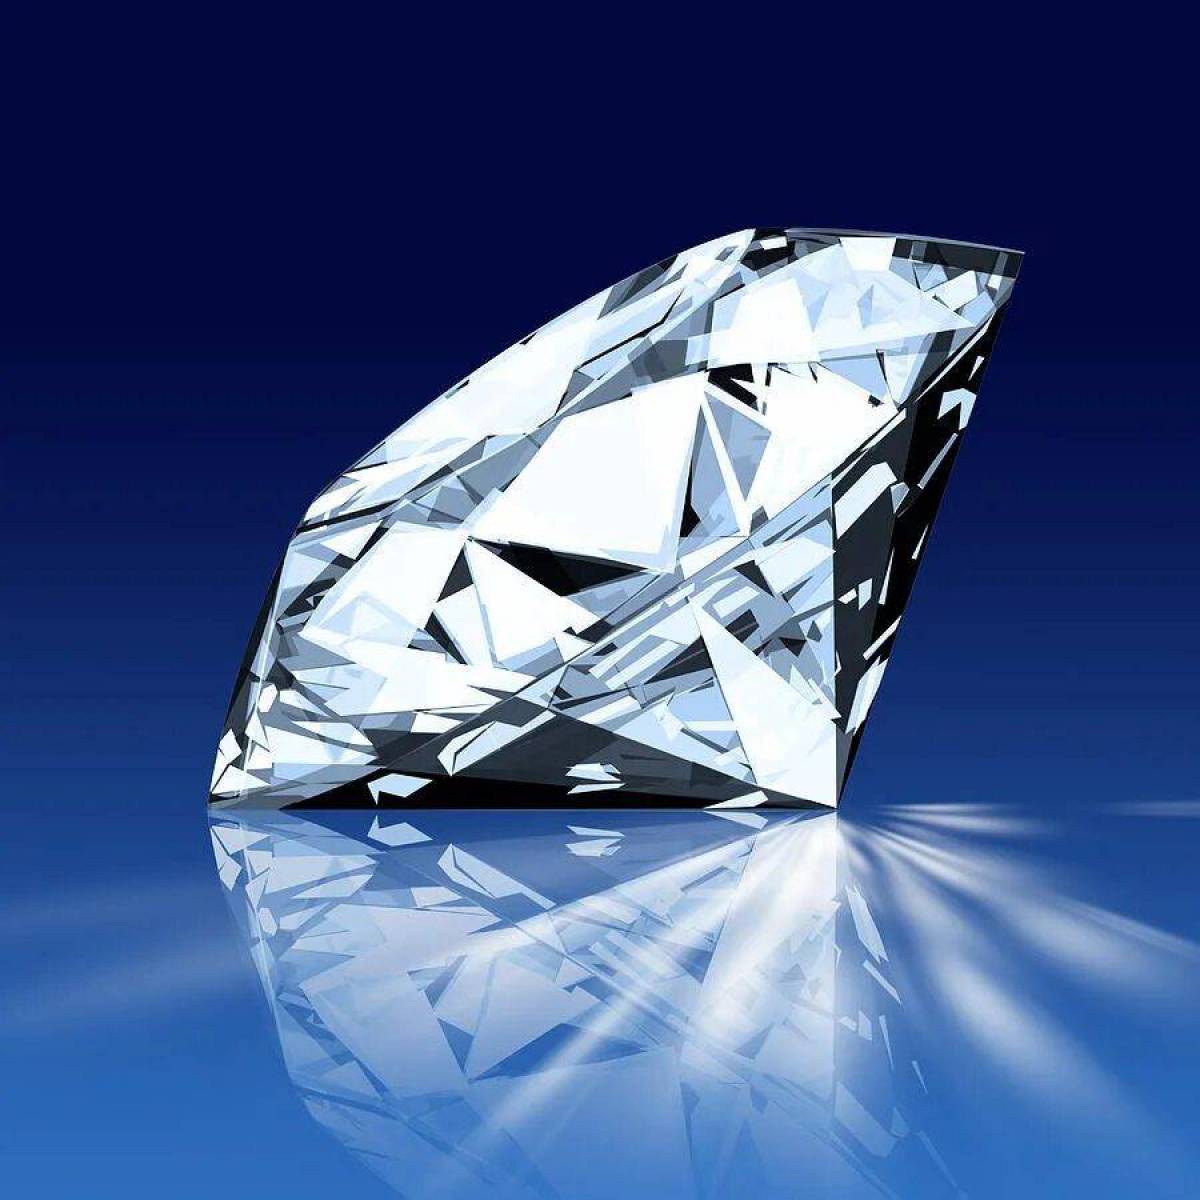 Diamond crystal. Даймонд (диамонд) / Diamond.